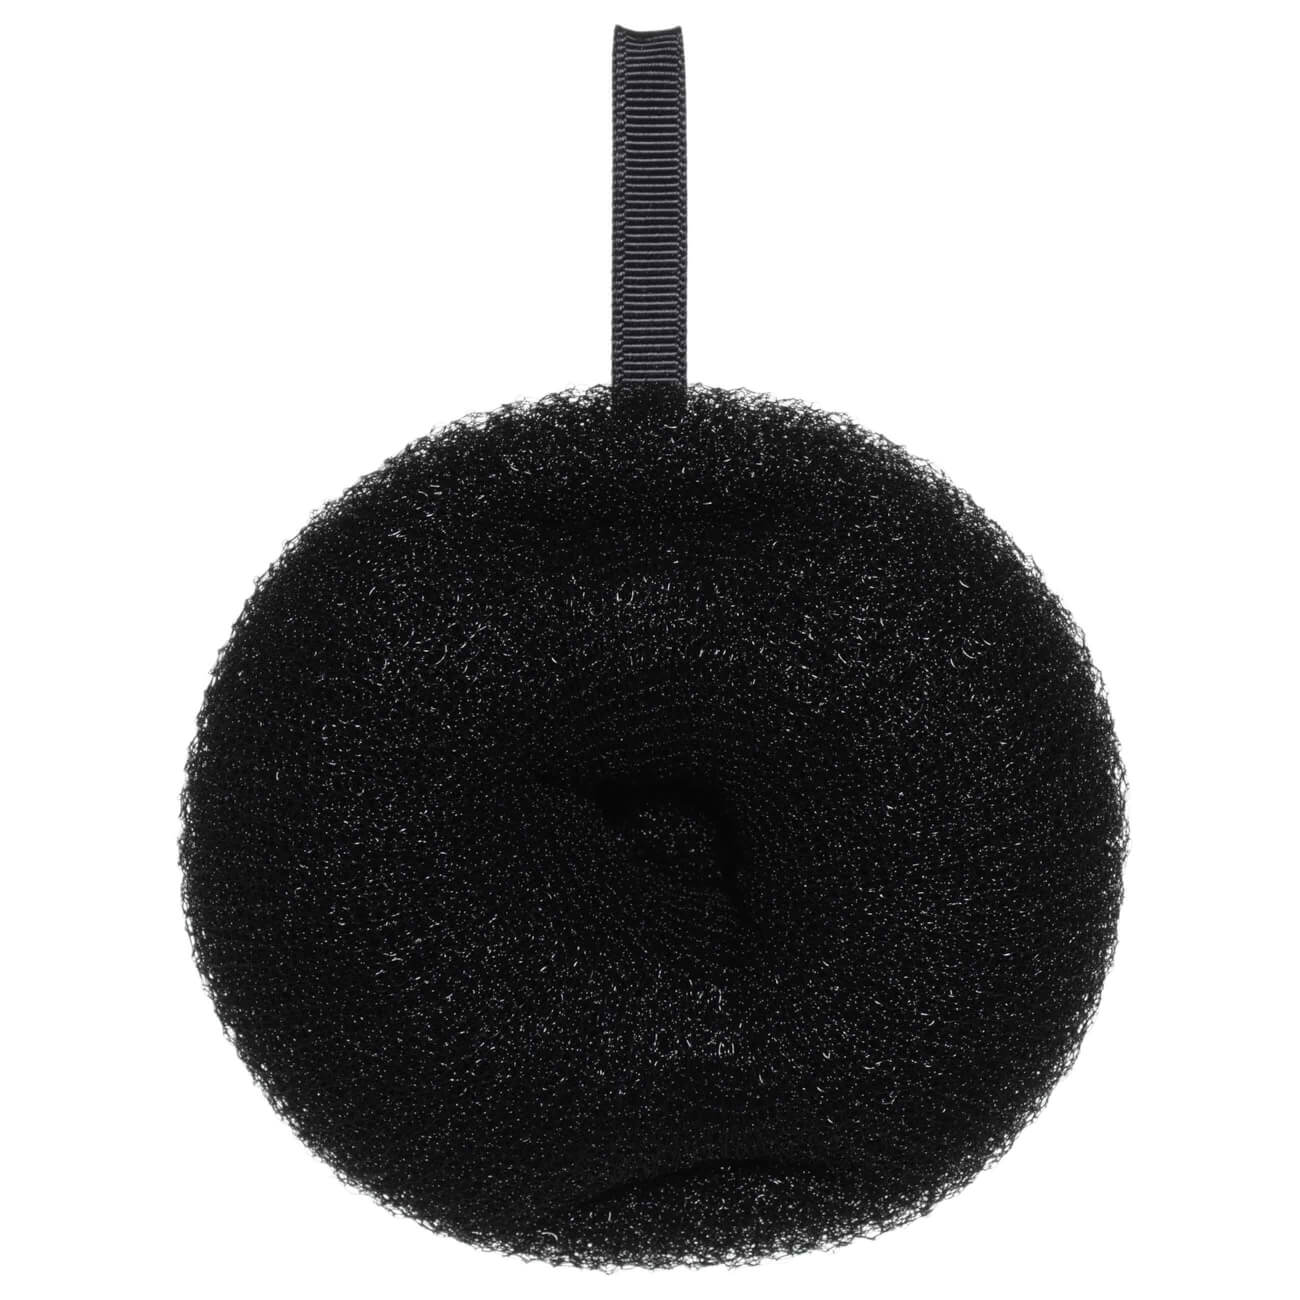 Мочалка для мытья тела, 11 см, полиэстер/нейлон, черная, Шар, Glamor изображение № 1